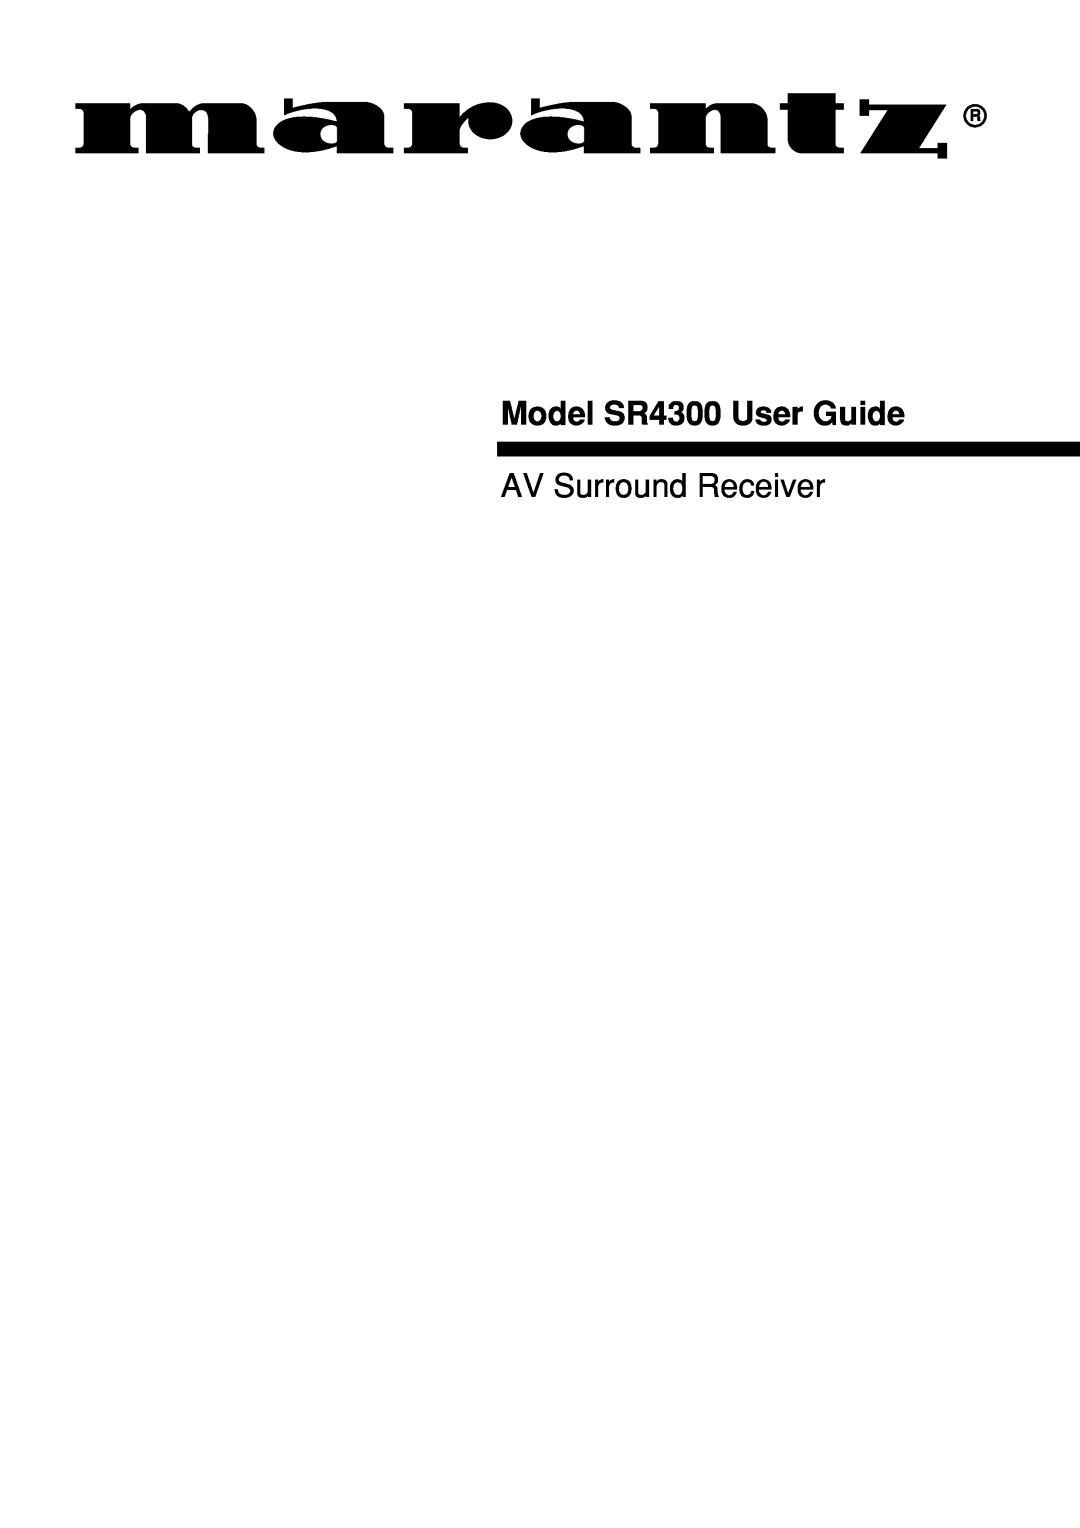 Marantz manual Model SR4300 User Guide, AV Surround Receiver 